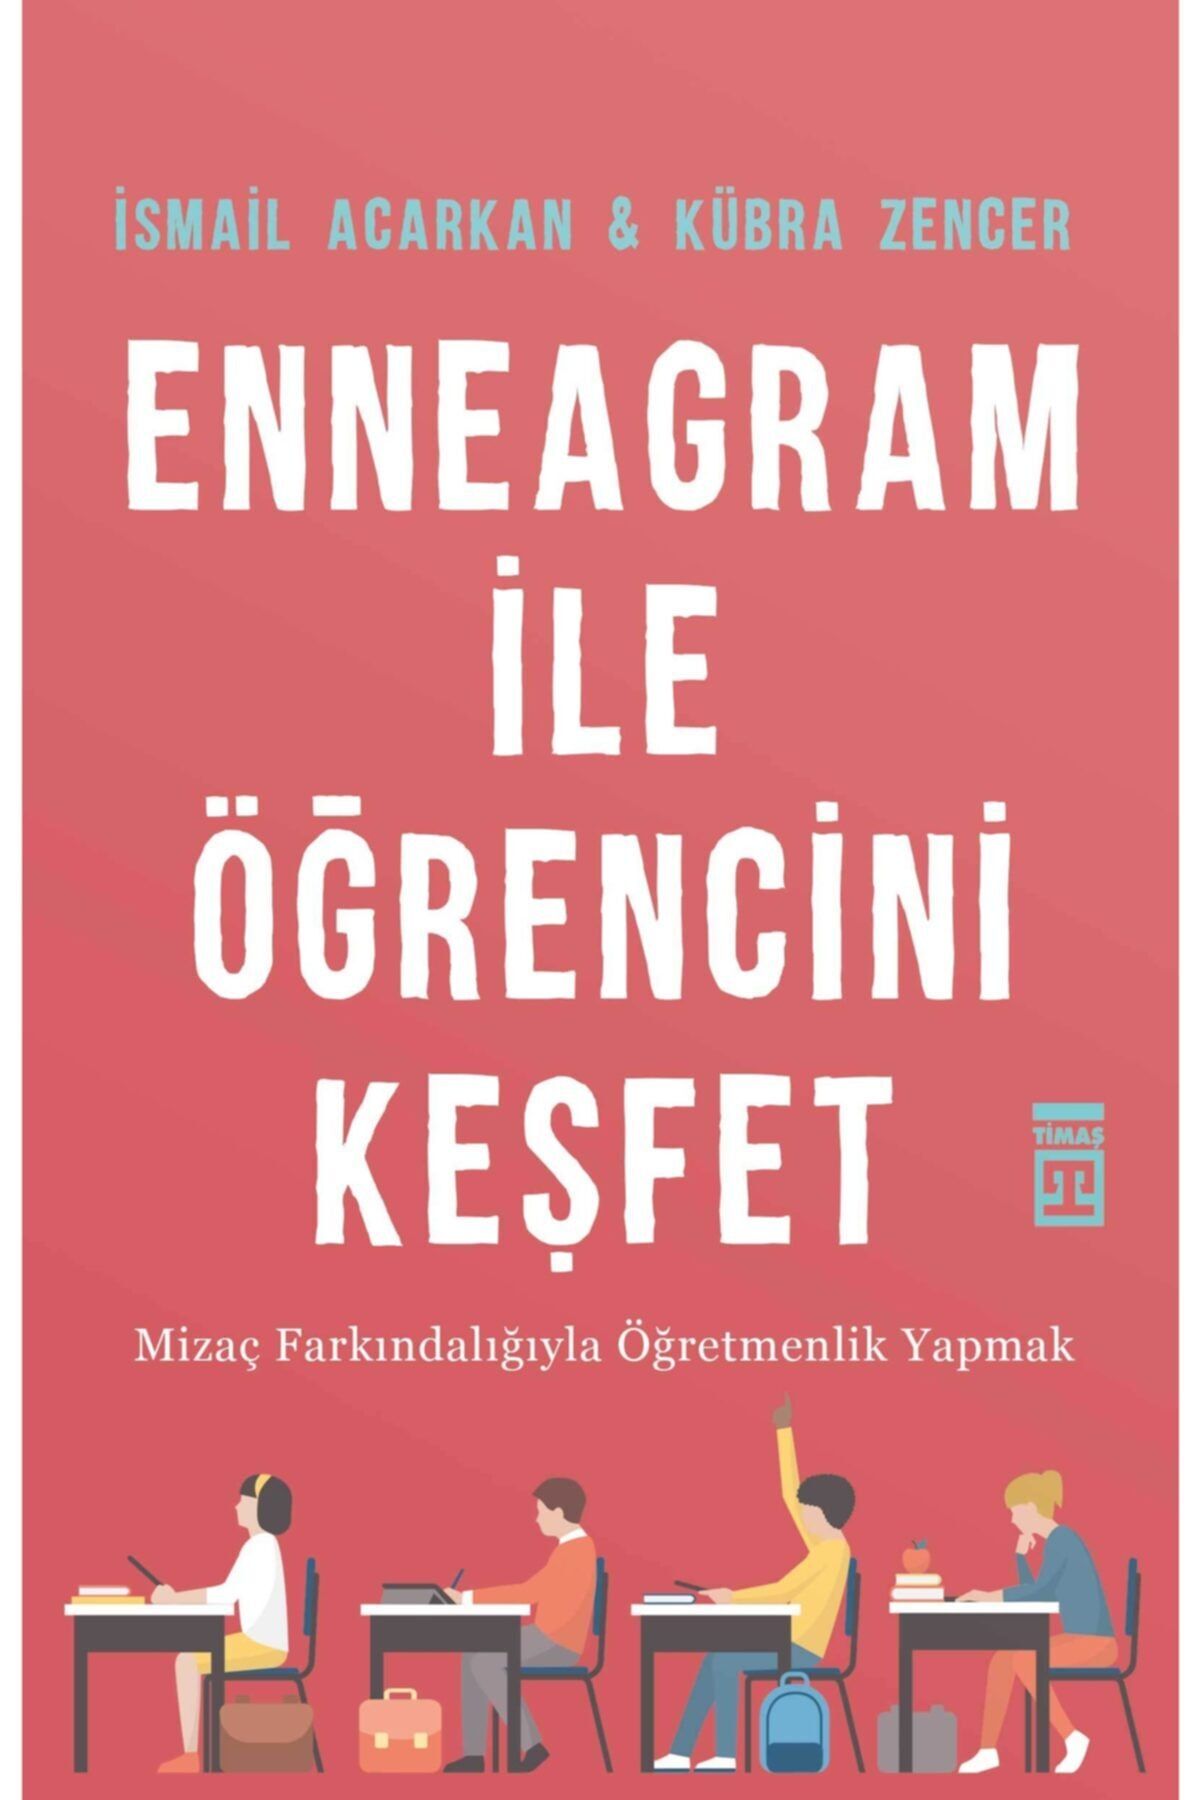 Timaş Yayınları Enneagram Ile Öğrencini Keşfet - - Ismail Acarkan & Kübra Zencer Kitabı